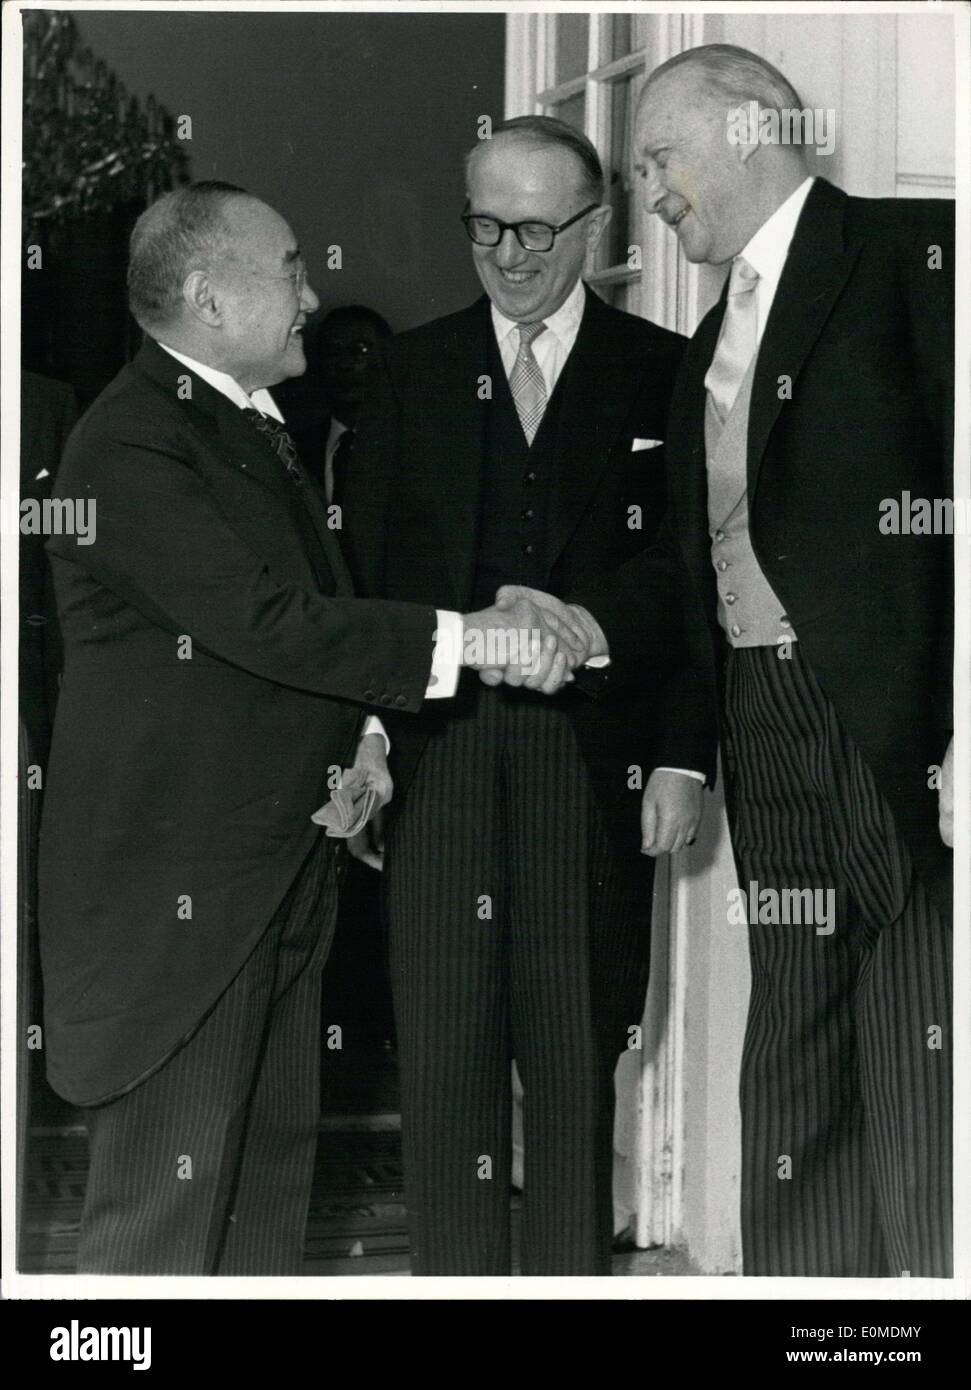 13 octobre 1954 - En tant que premier premier ministre du Japon, le premier ministre Yoshida a effectué sa première visite officielle en Allemagne à Bonn et a été accueilli par M. le Chancelier Adenauer à Schaumburg Palace. Photo : Le premier ministre Yoshida, Secrétaire d'Etat M. Hallstein, et le Chancelier Adenauer, Dr. Banque D'Images